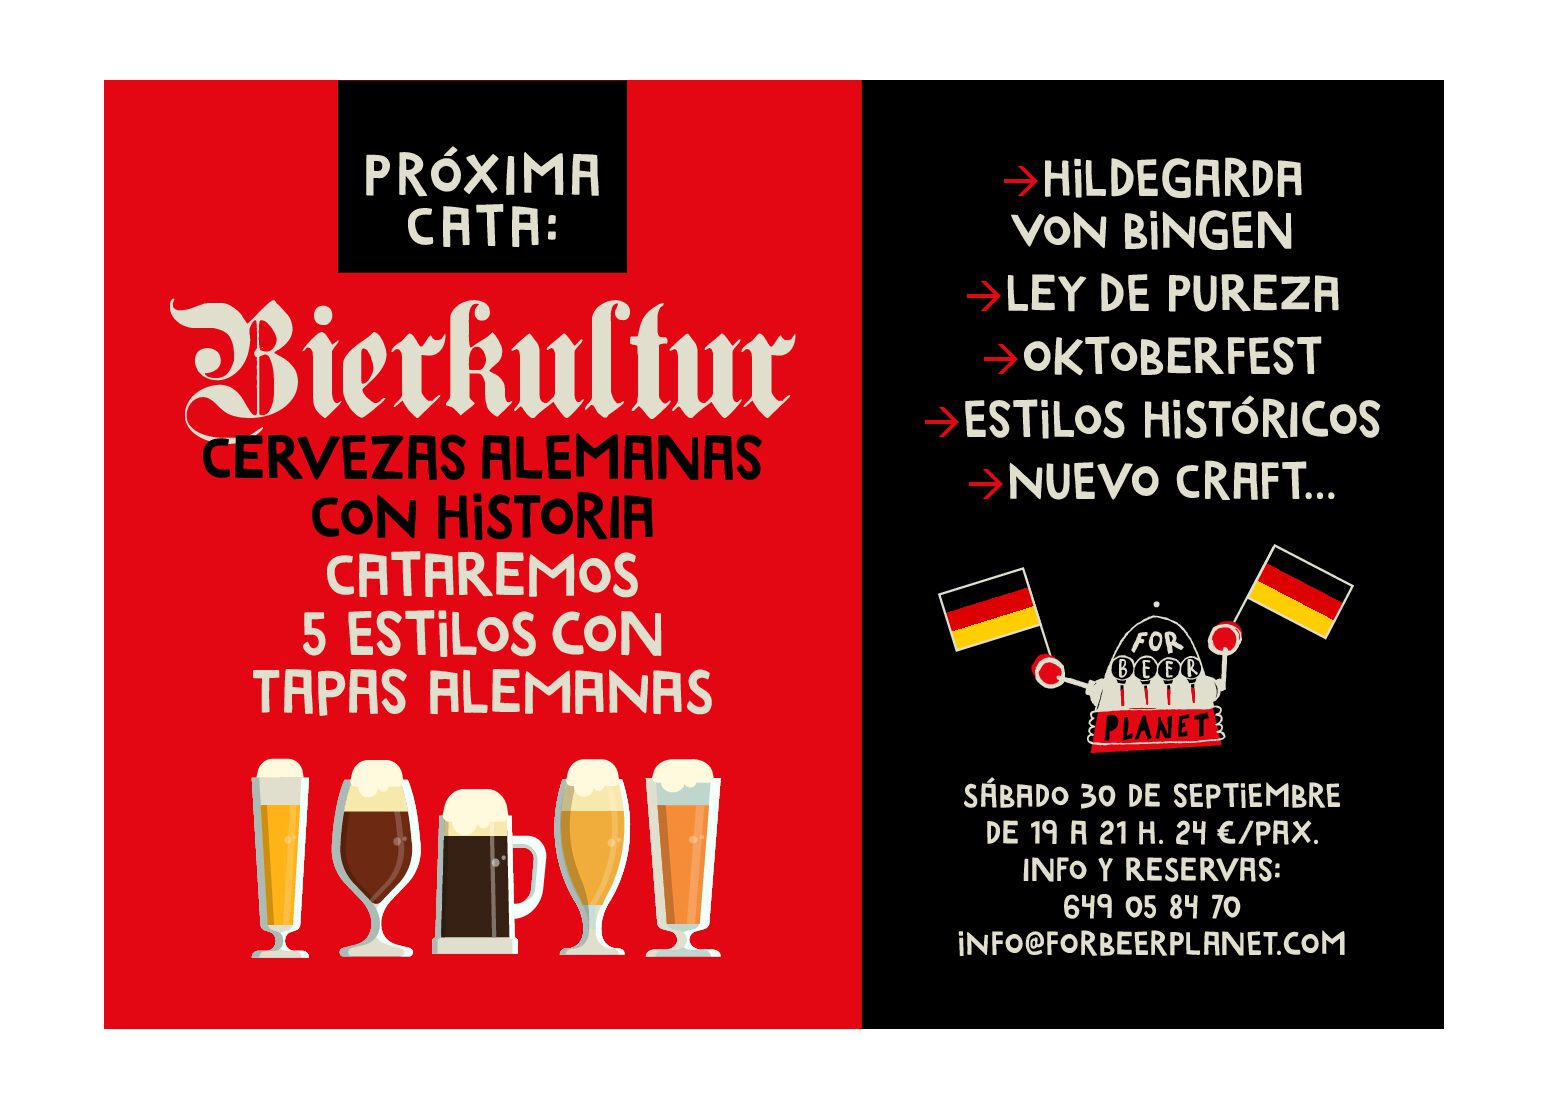 Cata Bierkultur: Cervezas alemanas con Historia